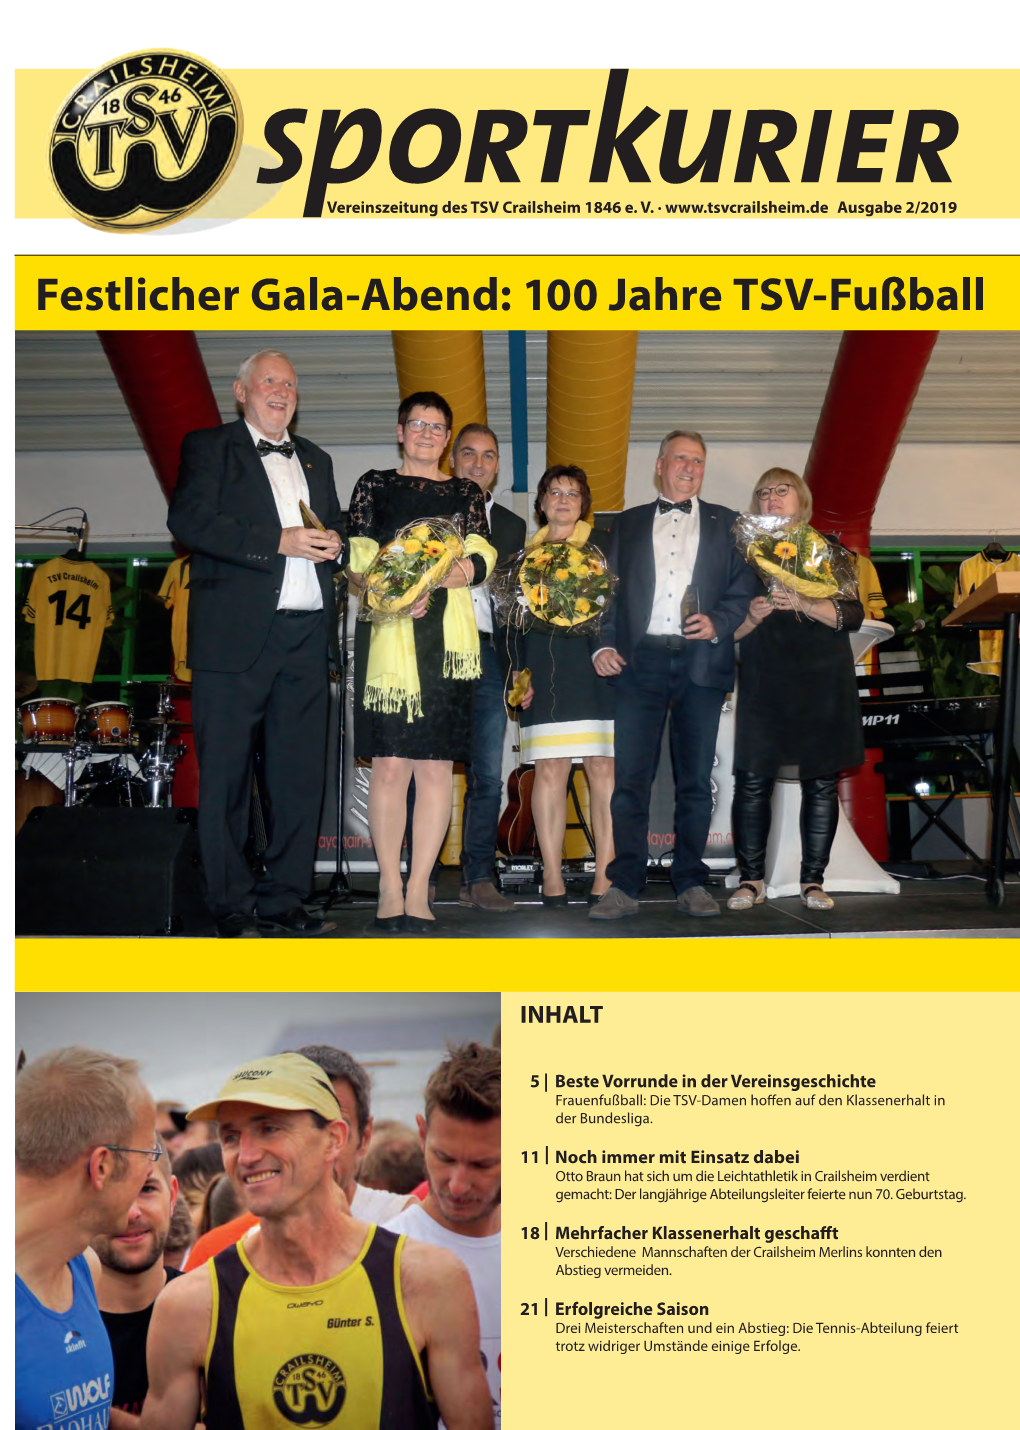 Festlicher Gala-Abend: 100 Jahre TSV-Fußball